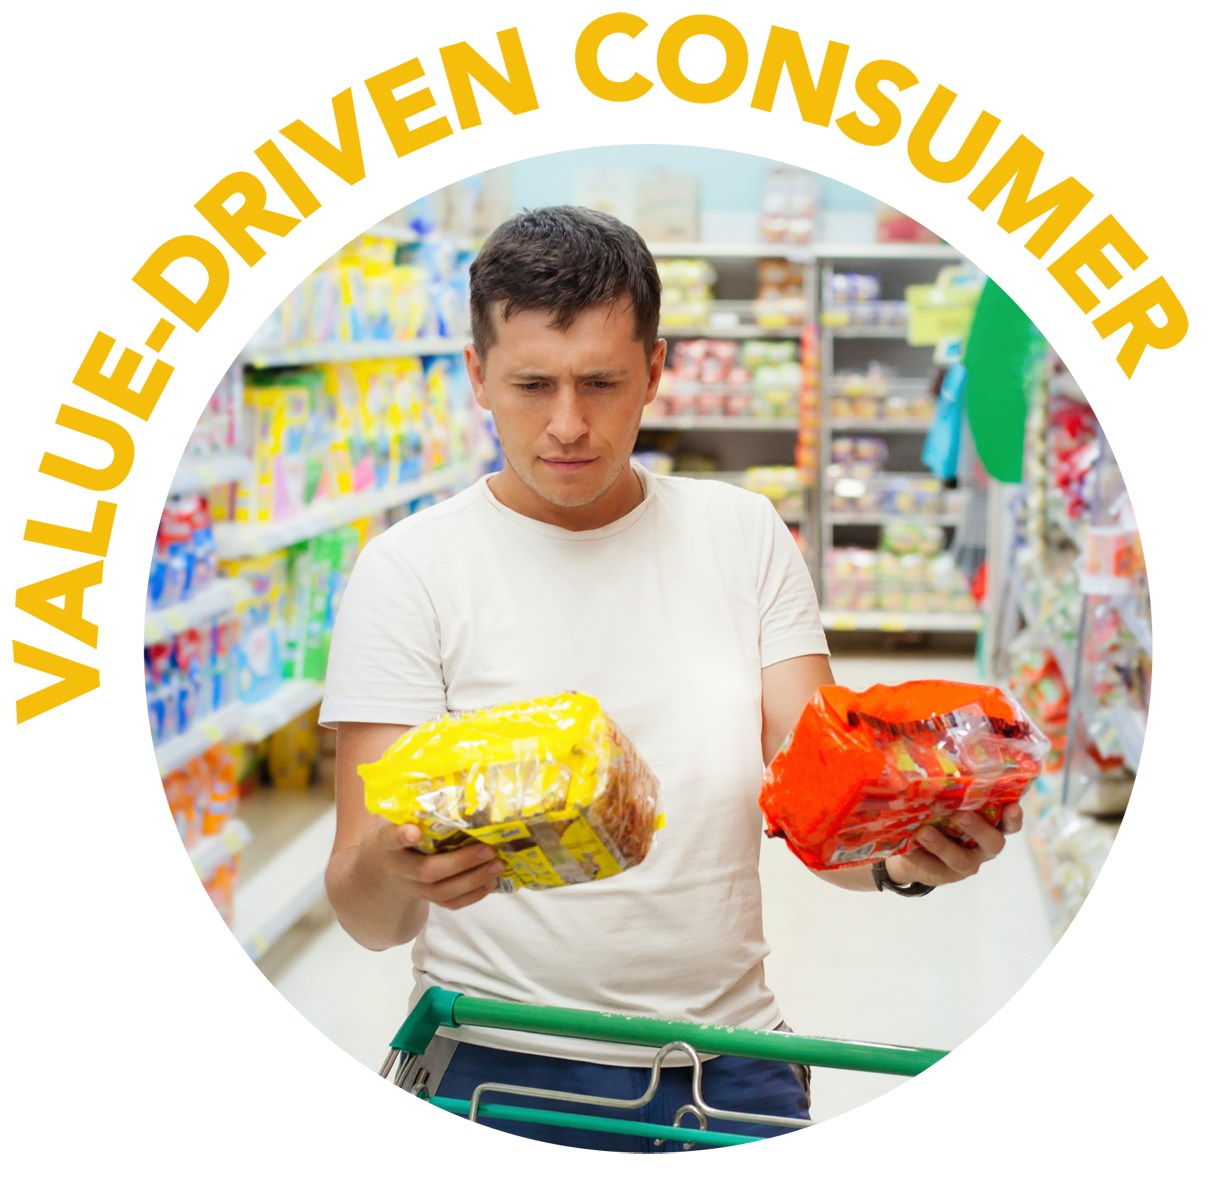 Value-Driven Consumer